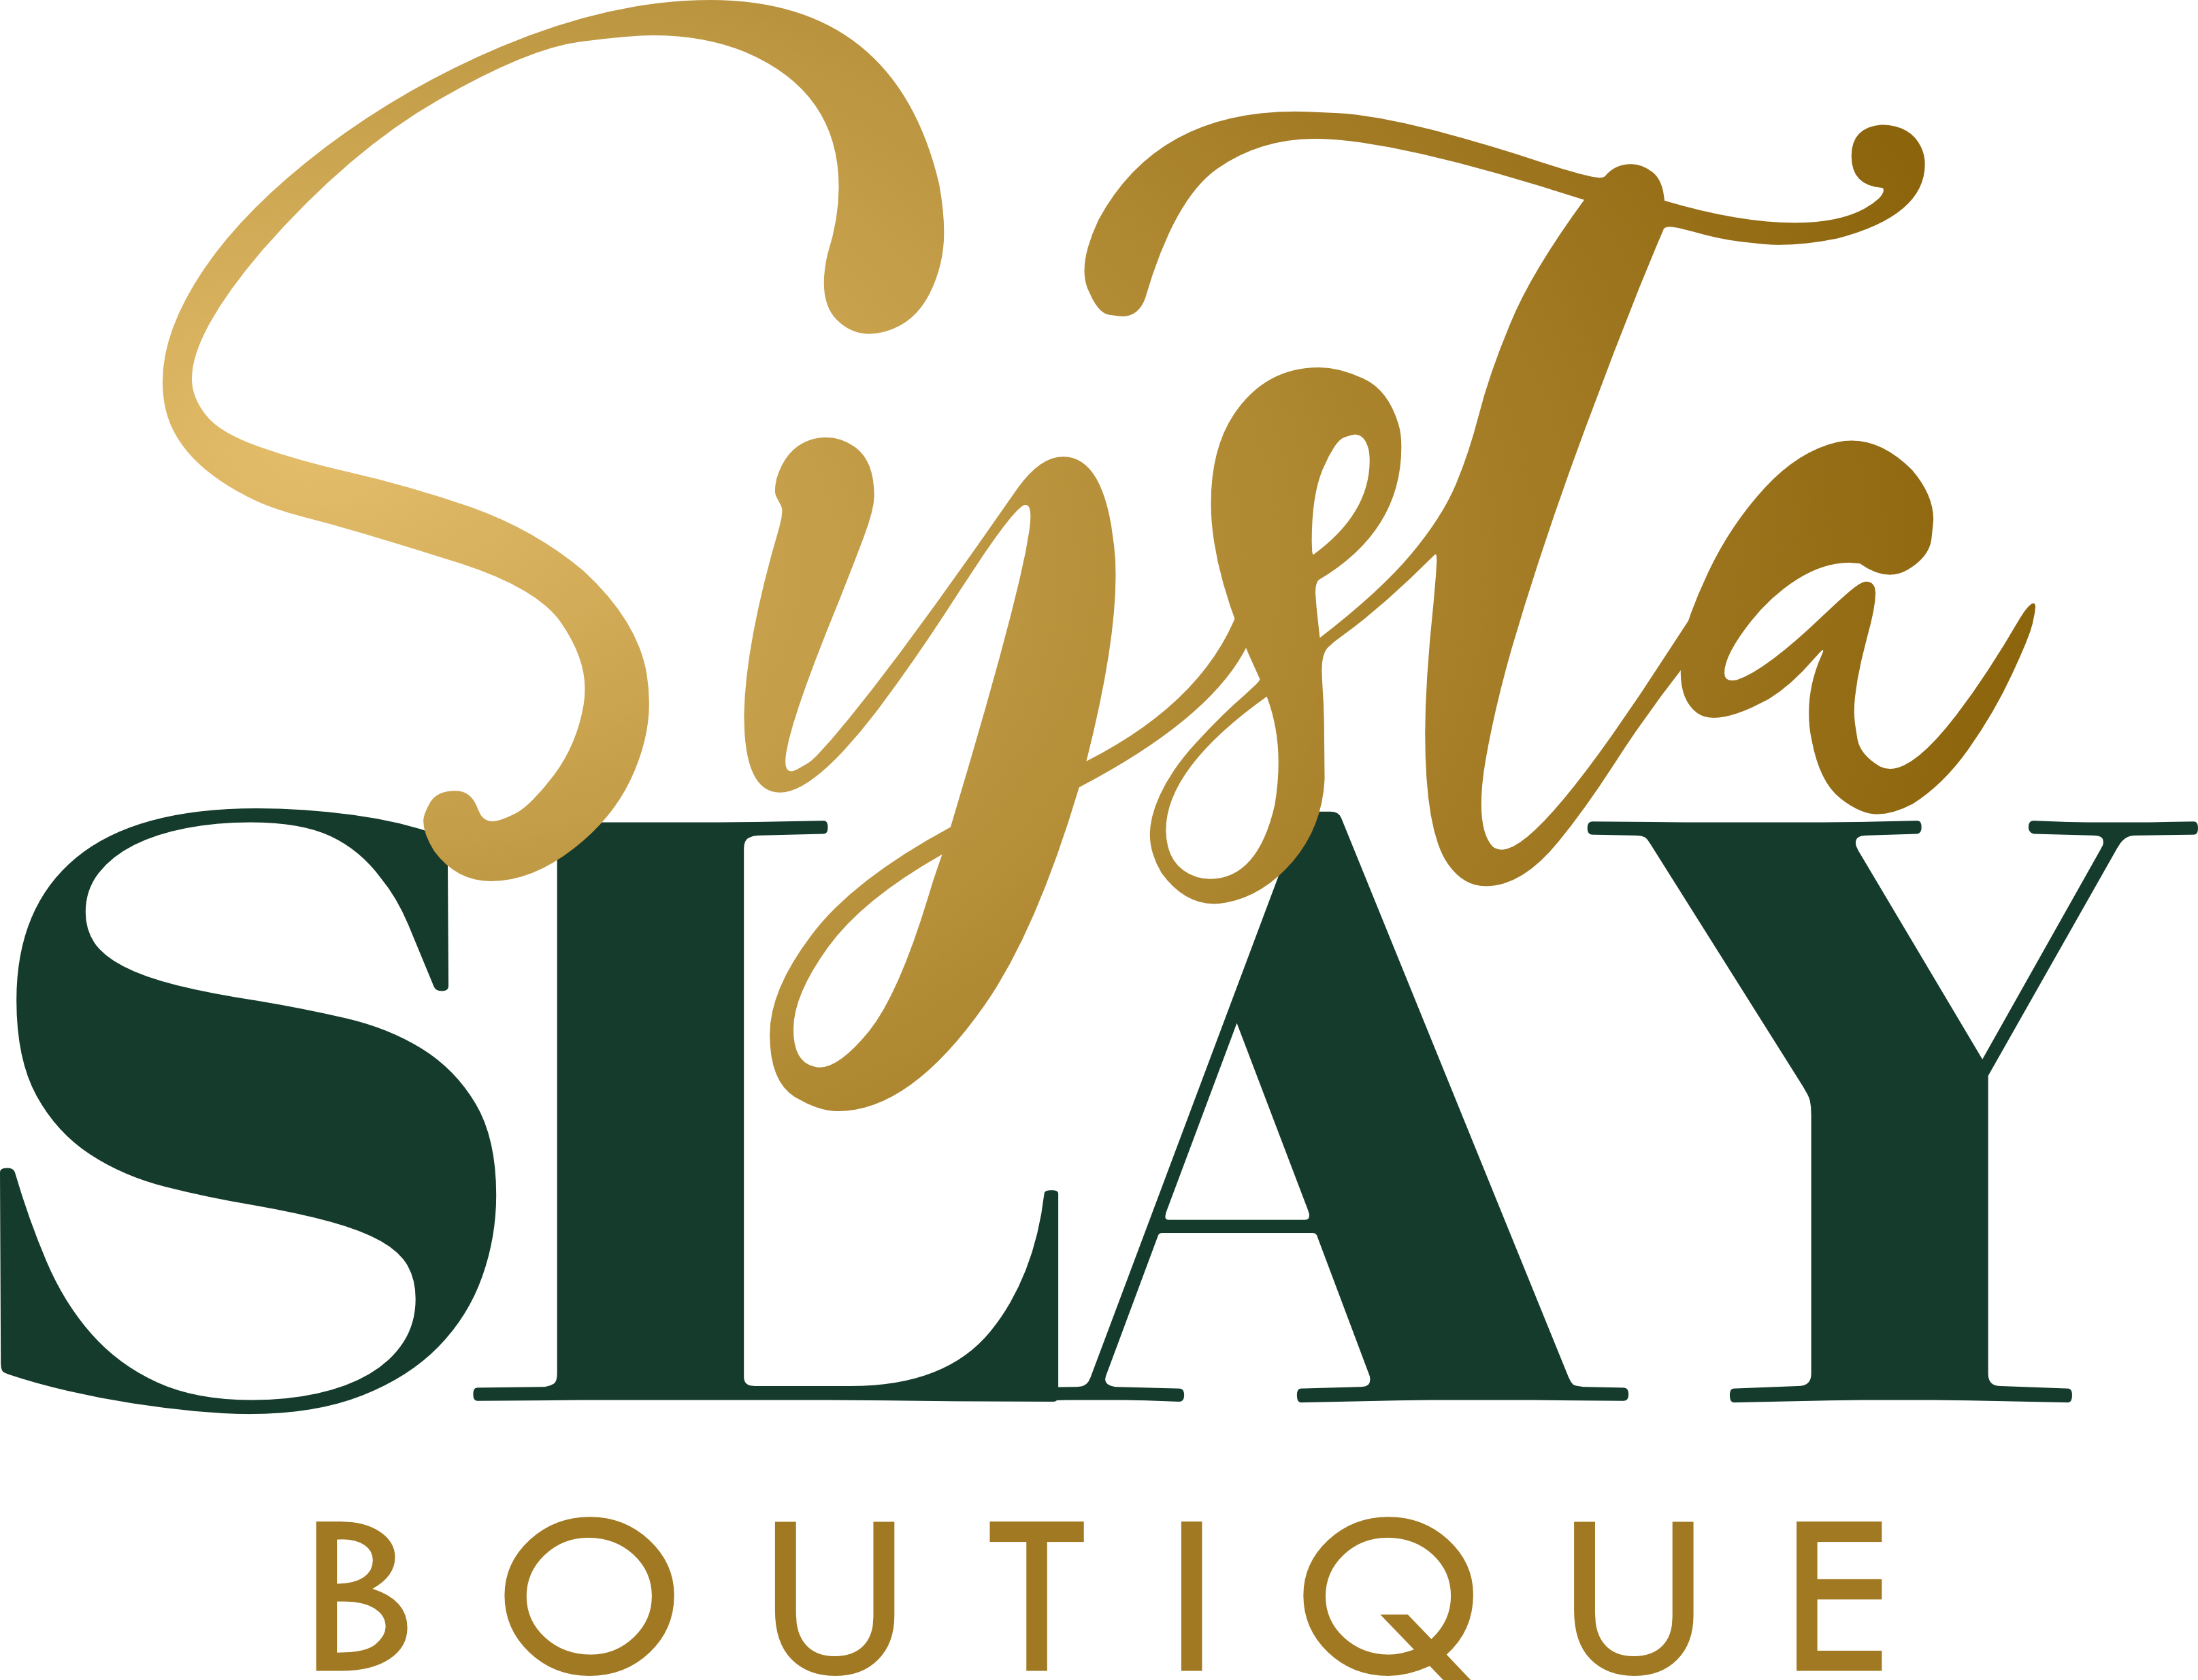 systaslayboutique.myshopify.com